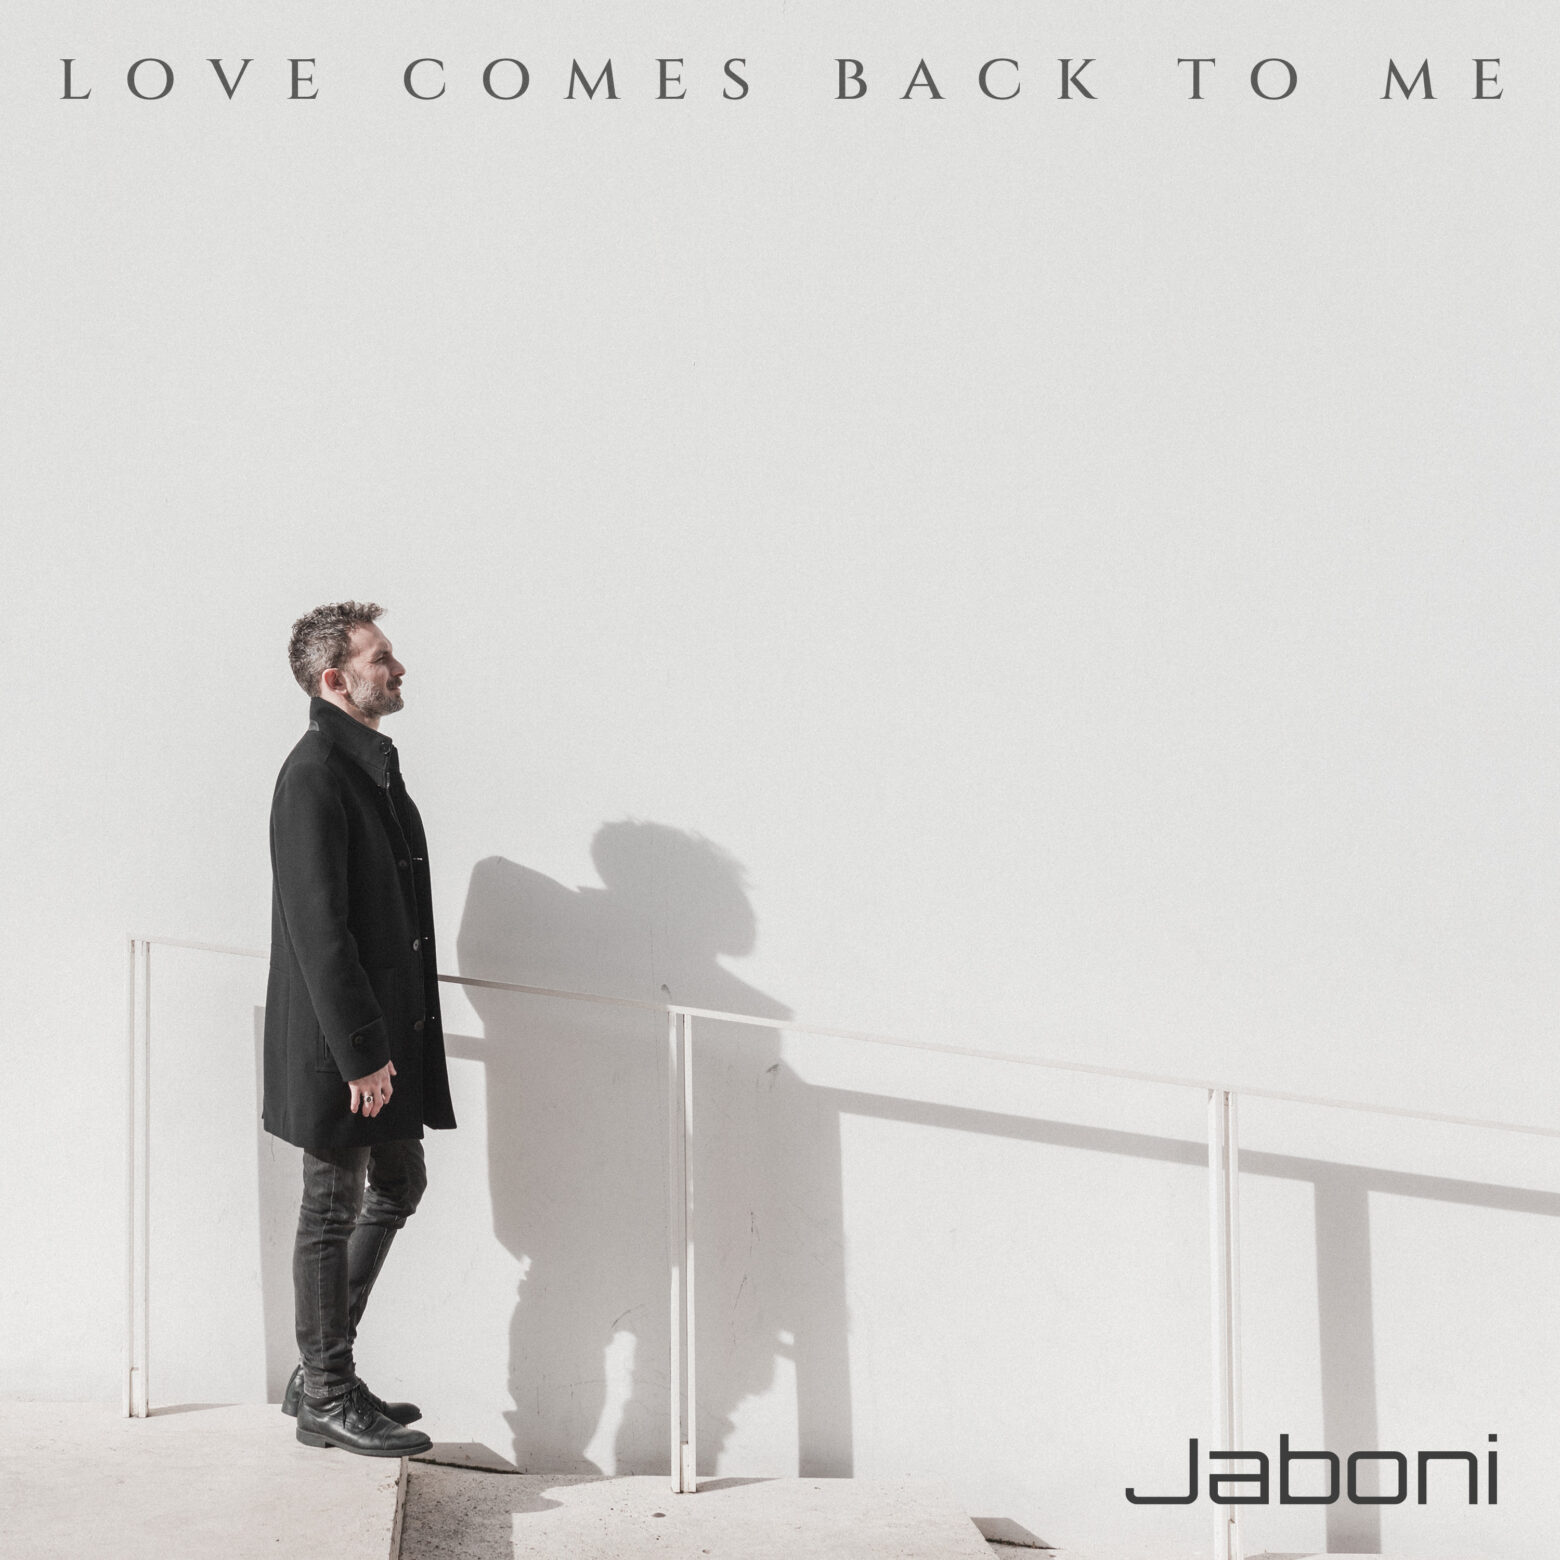 Dal 16 APRILE è in rotazione radiofonica e su tutte le piattaforme “LOVE COMES BACK TO ME” , il nuovo singolo di JABONI